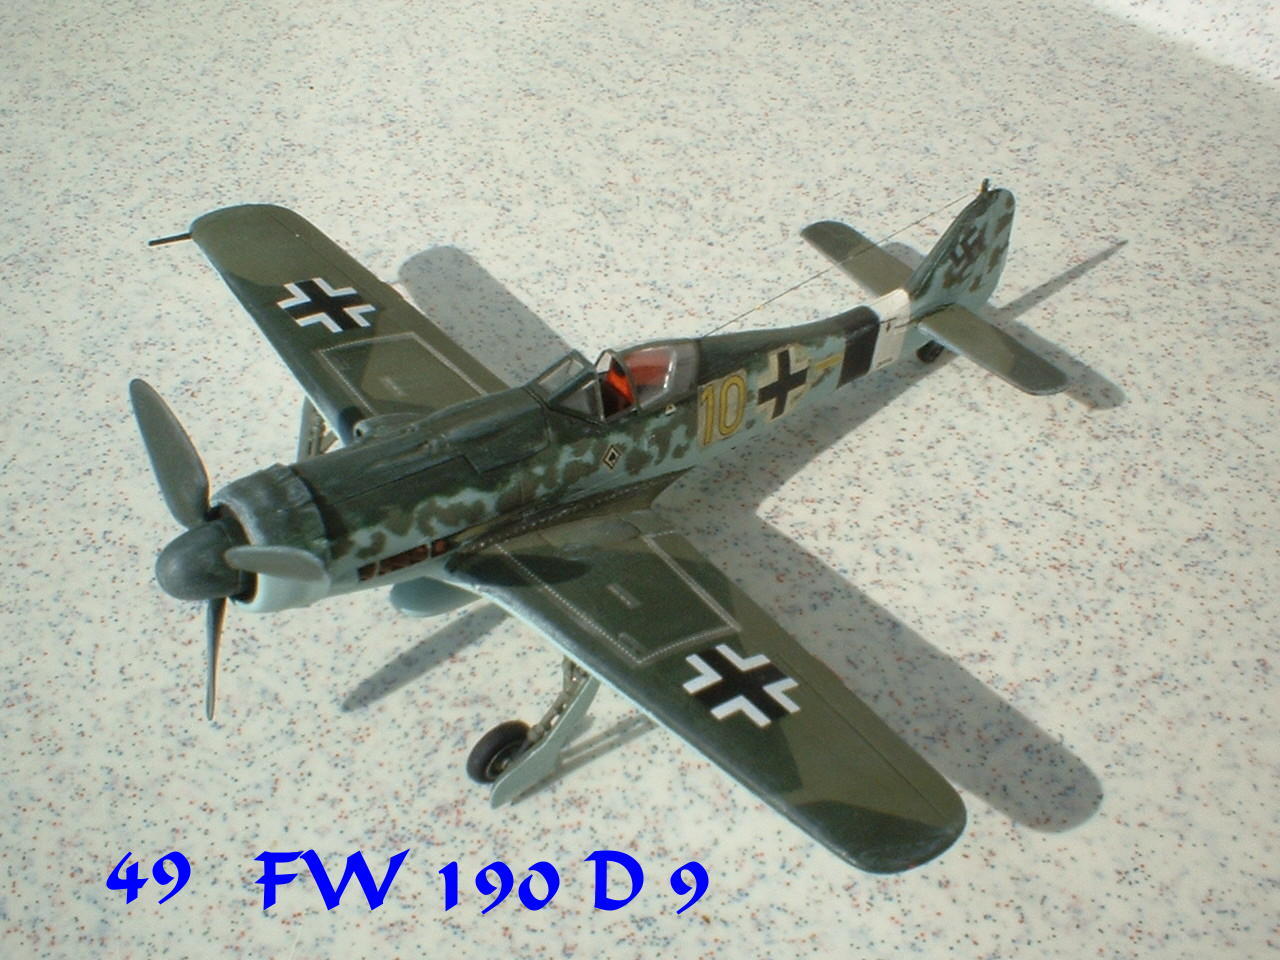 FW-190 D 9